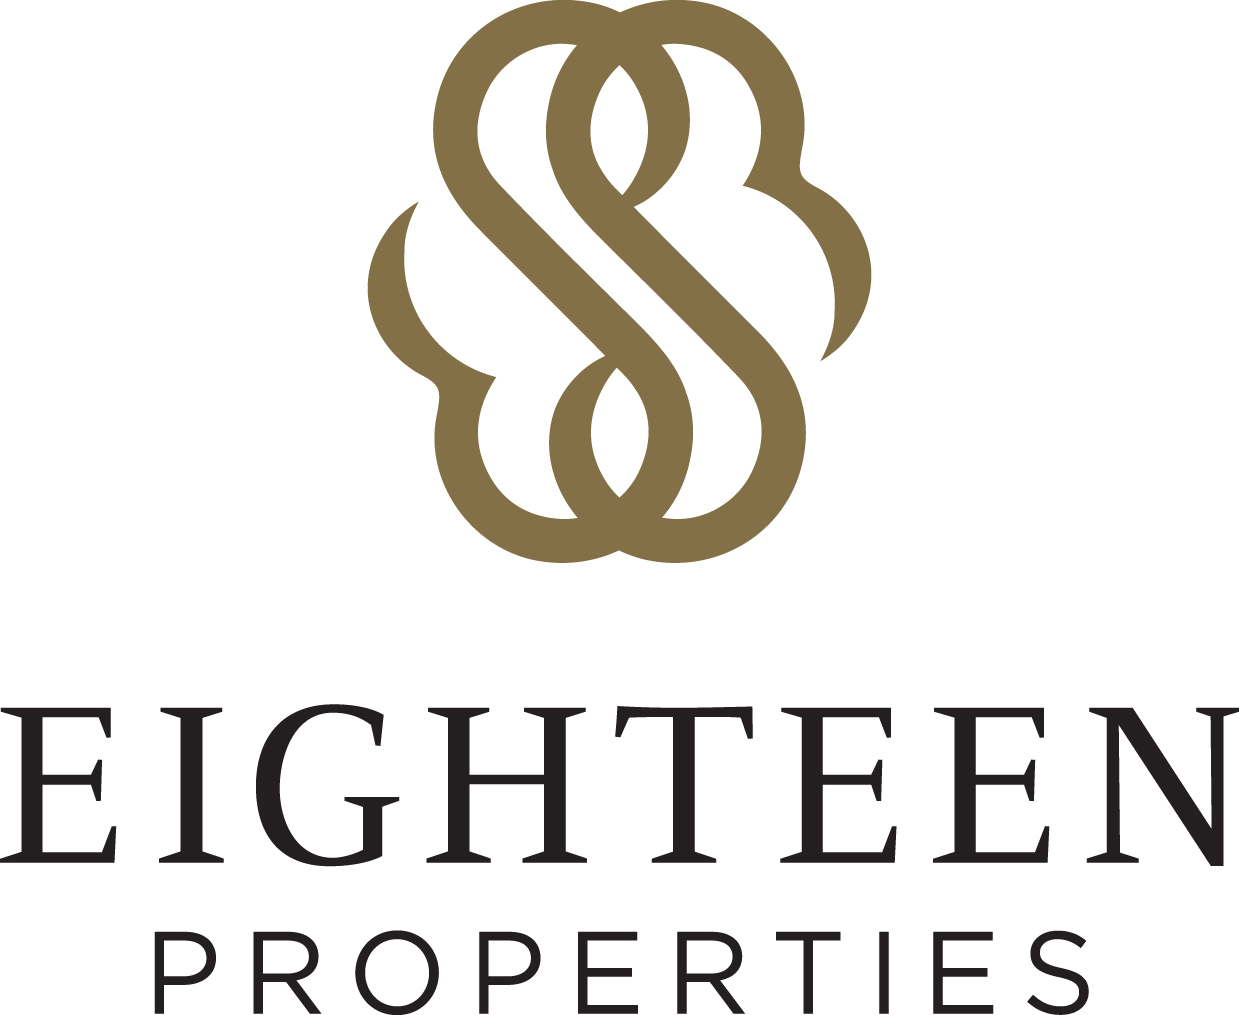 Eighteen Properties